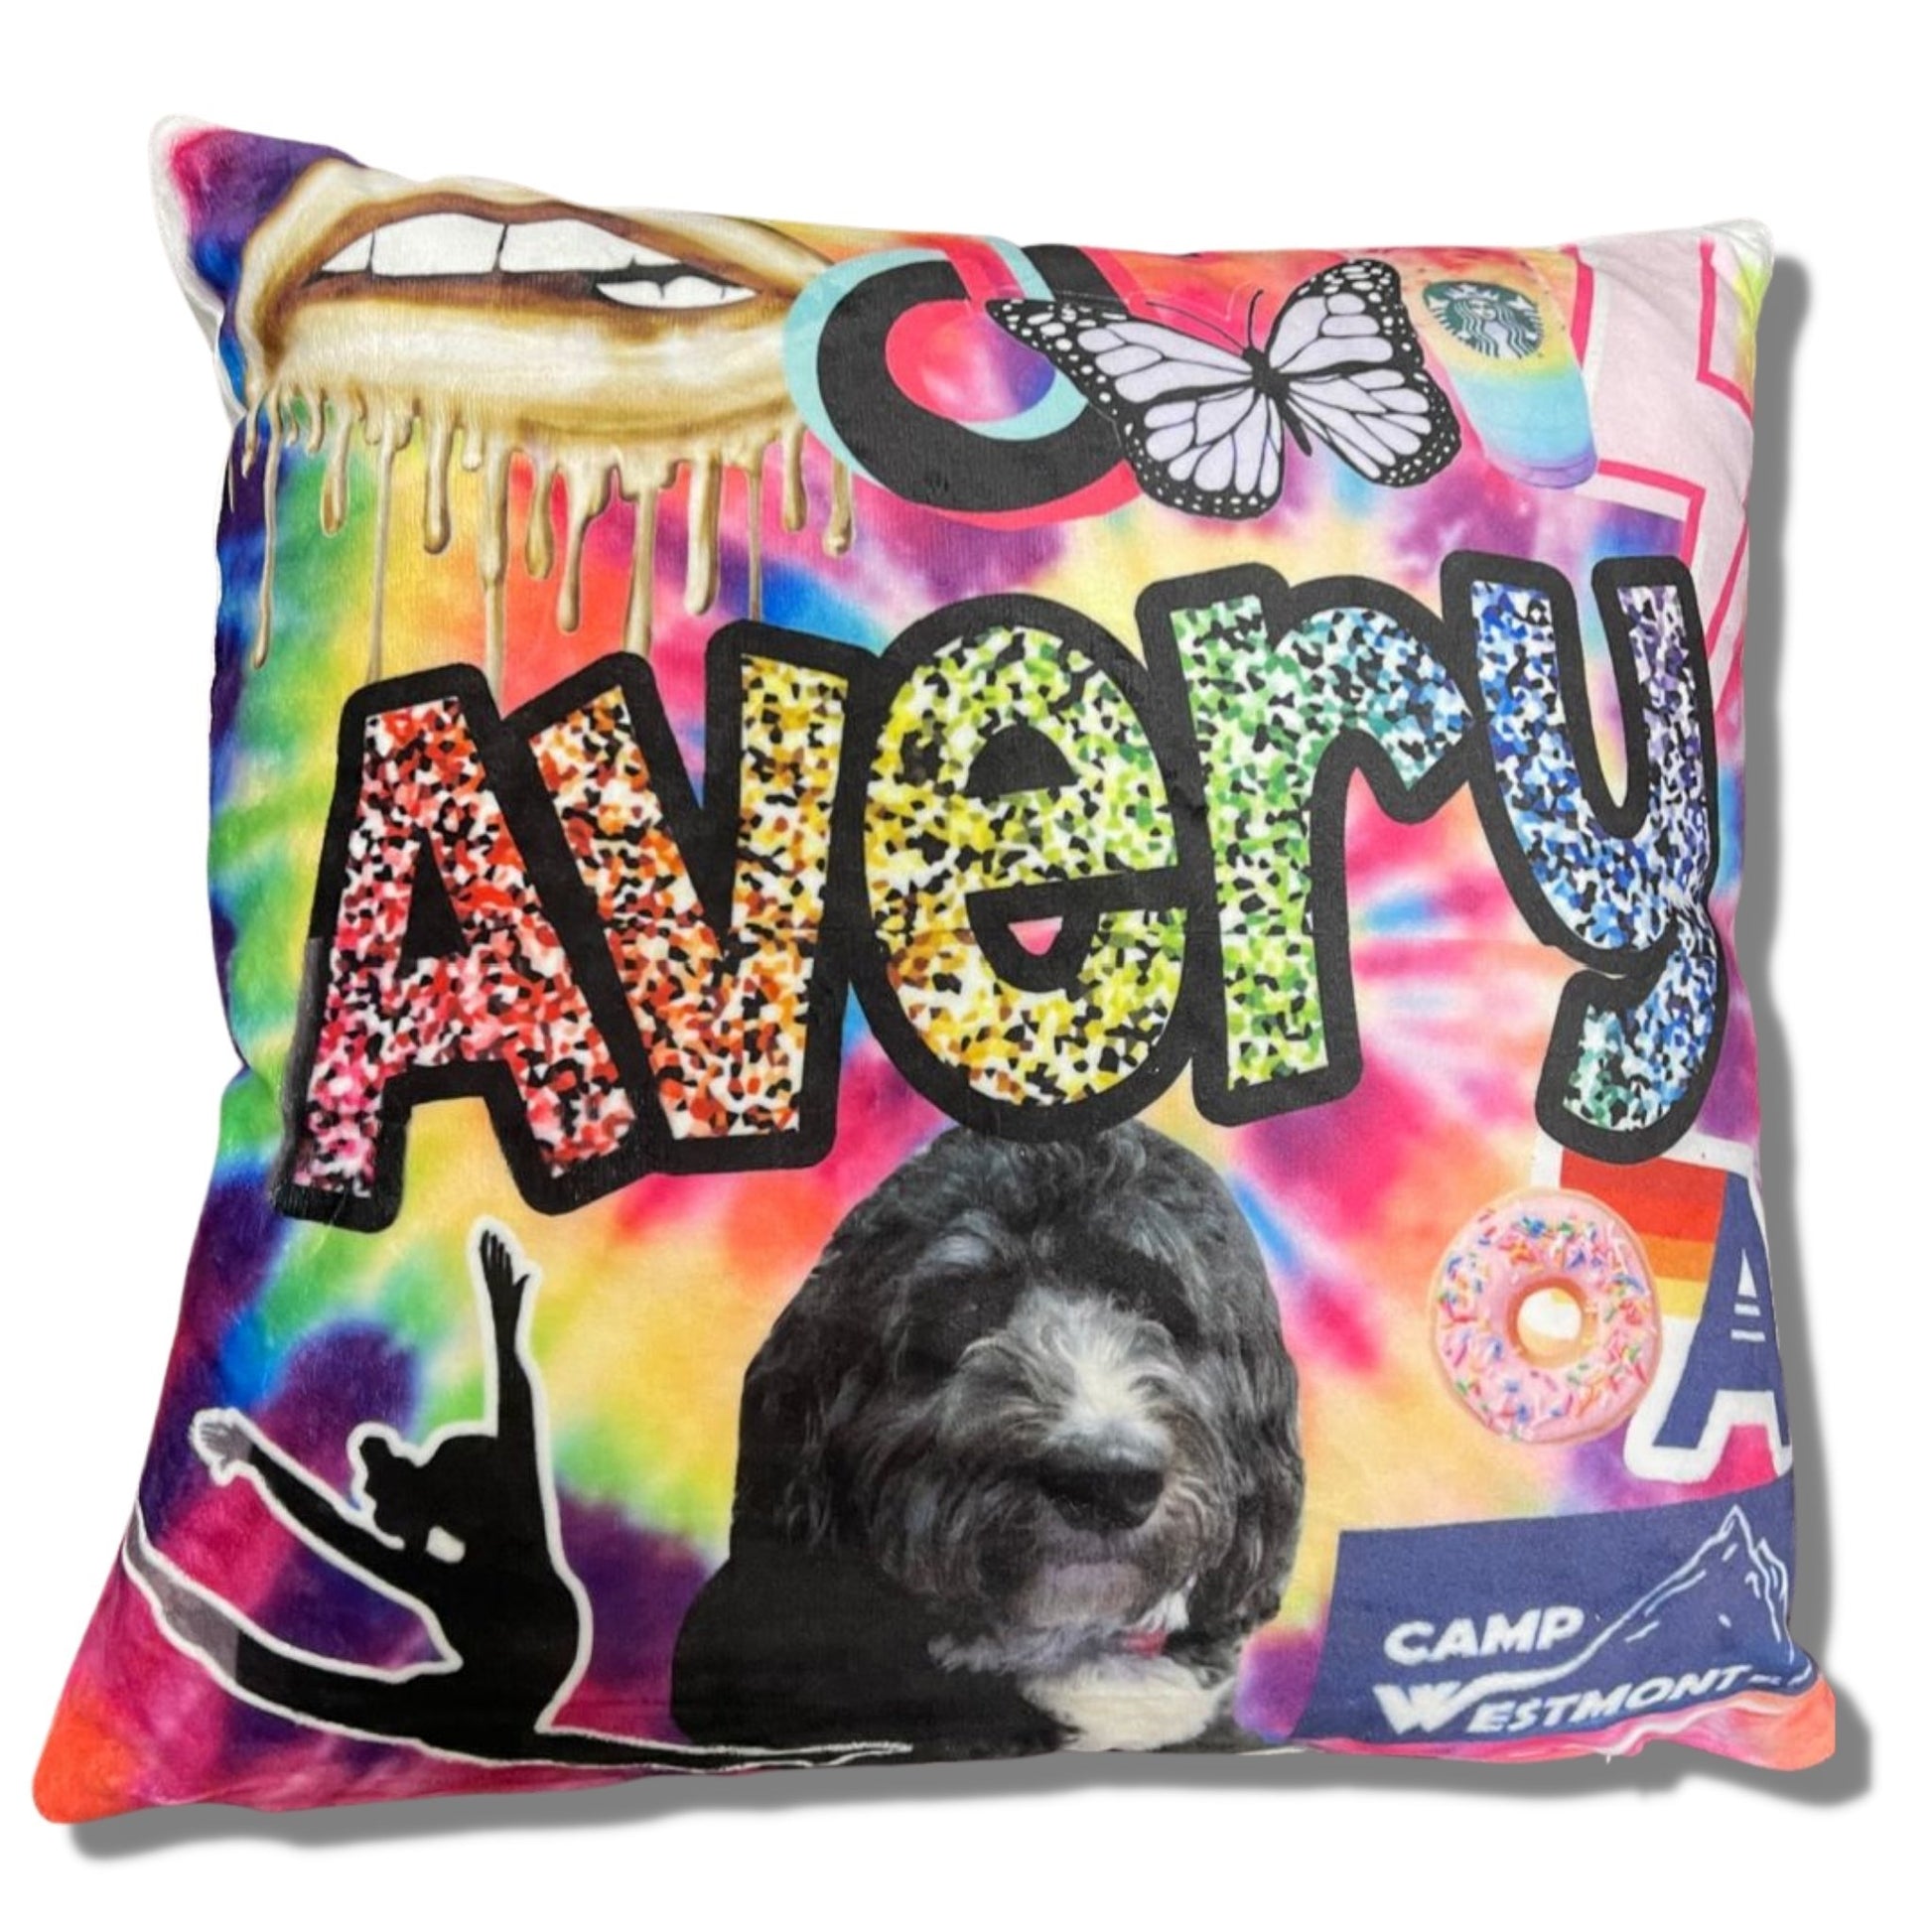 Favorite Things Custom Pillows - a Spirit Animal - Custom Pillow Camp Custom Pillow custom-pillows